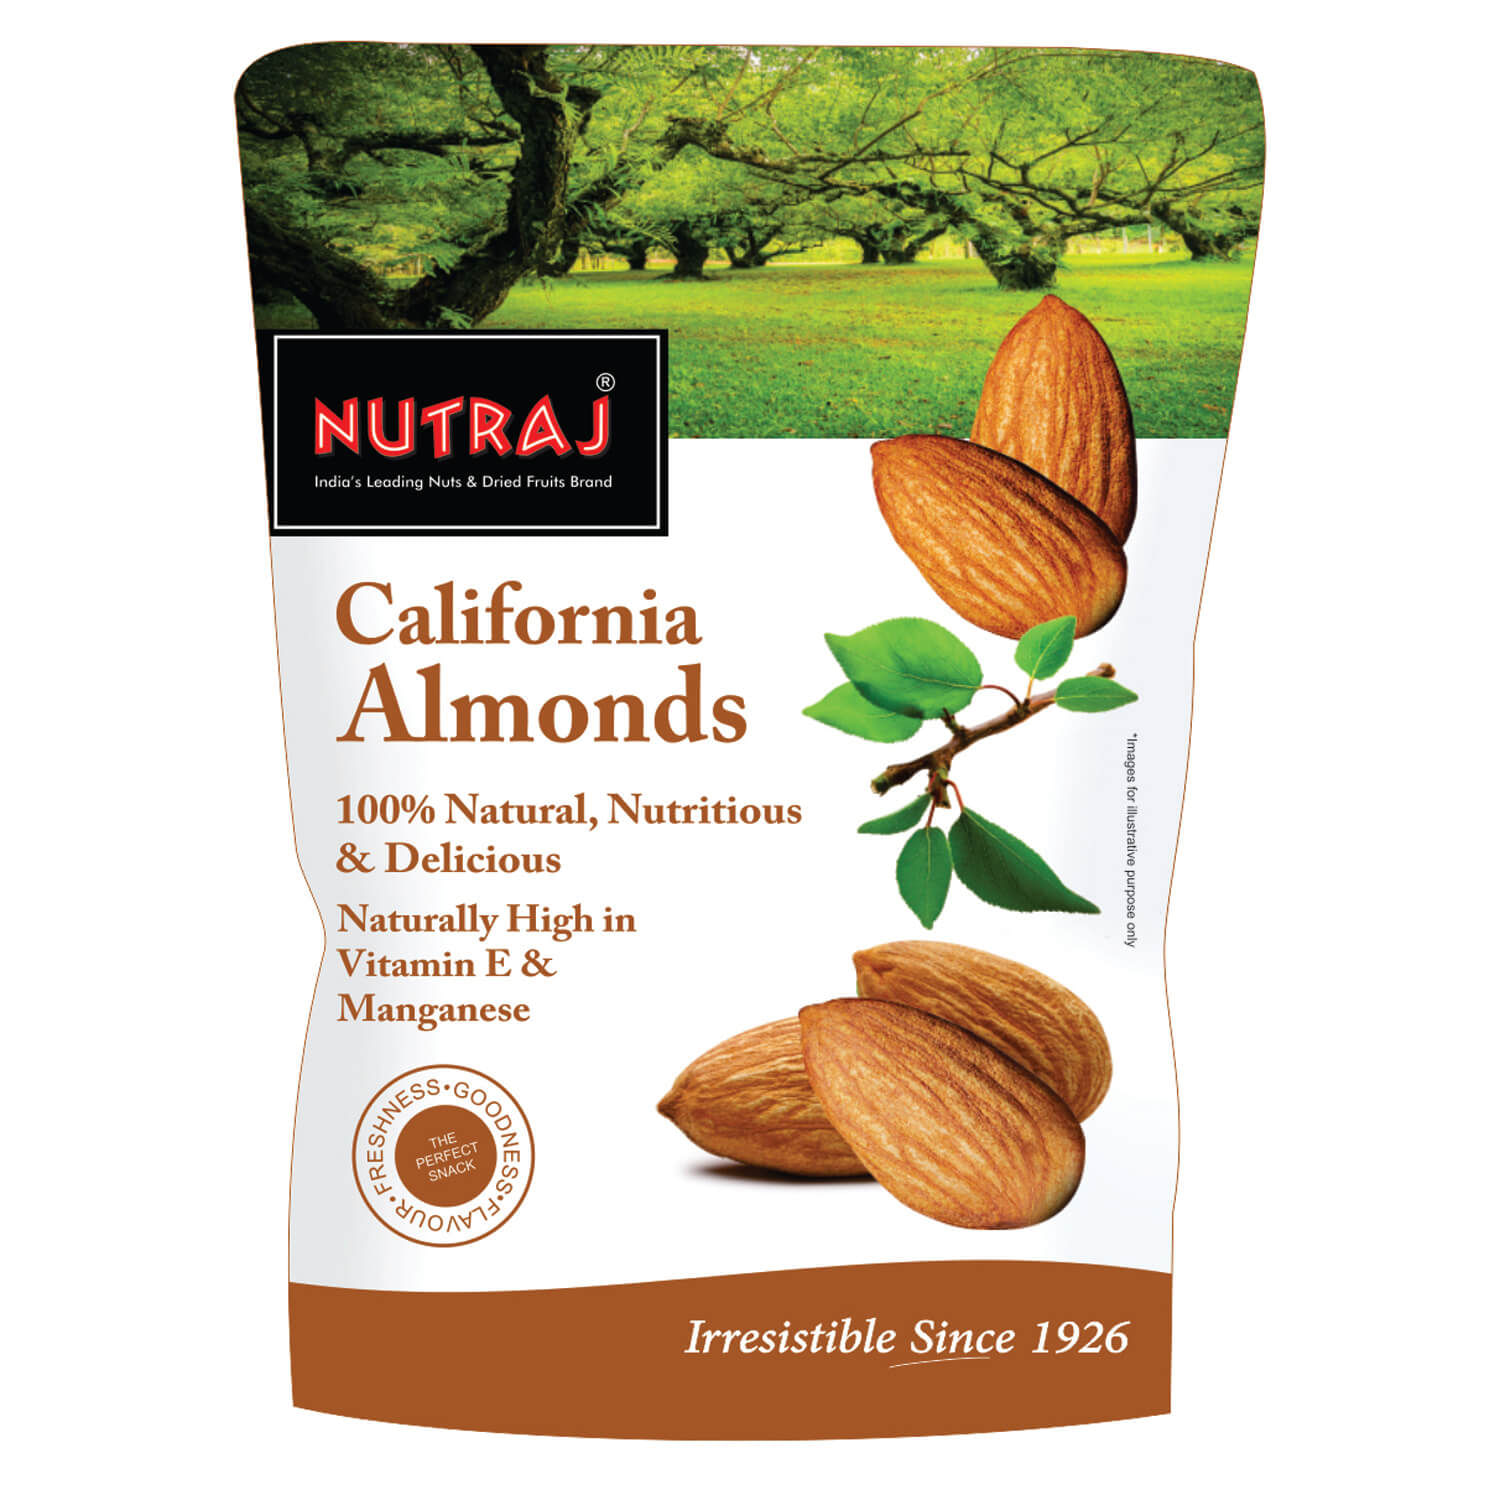 Nutraj Daily Needs Dry Fruits Combo Pack (Almonds, Cashews, Raisins, Pistachios) - 1Kg (250g Each)